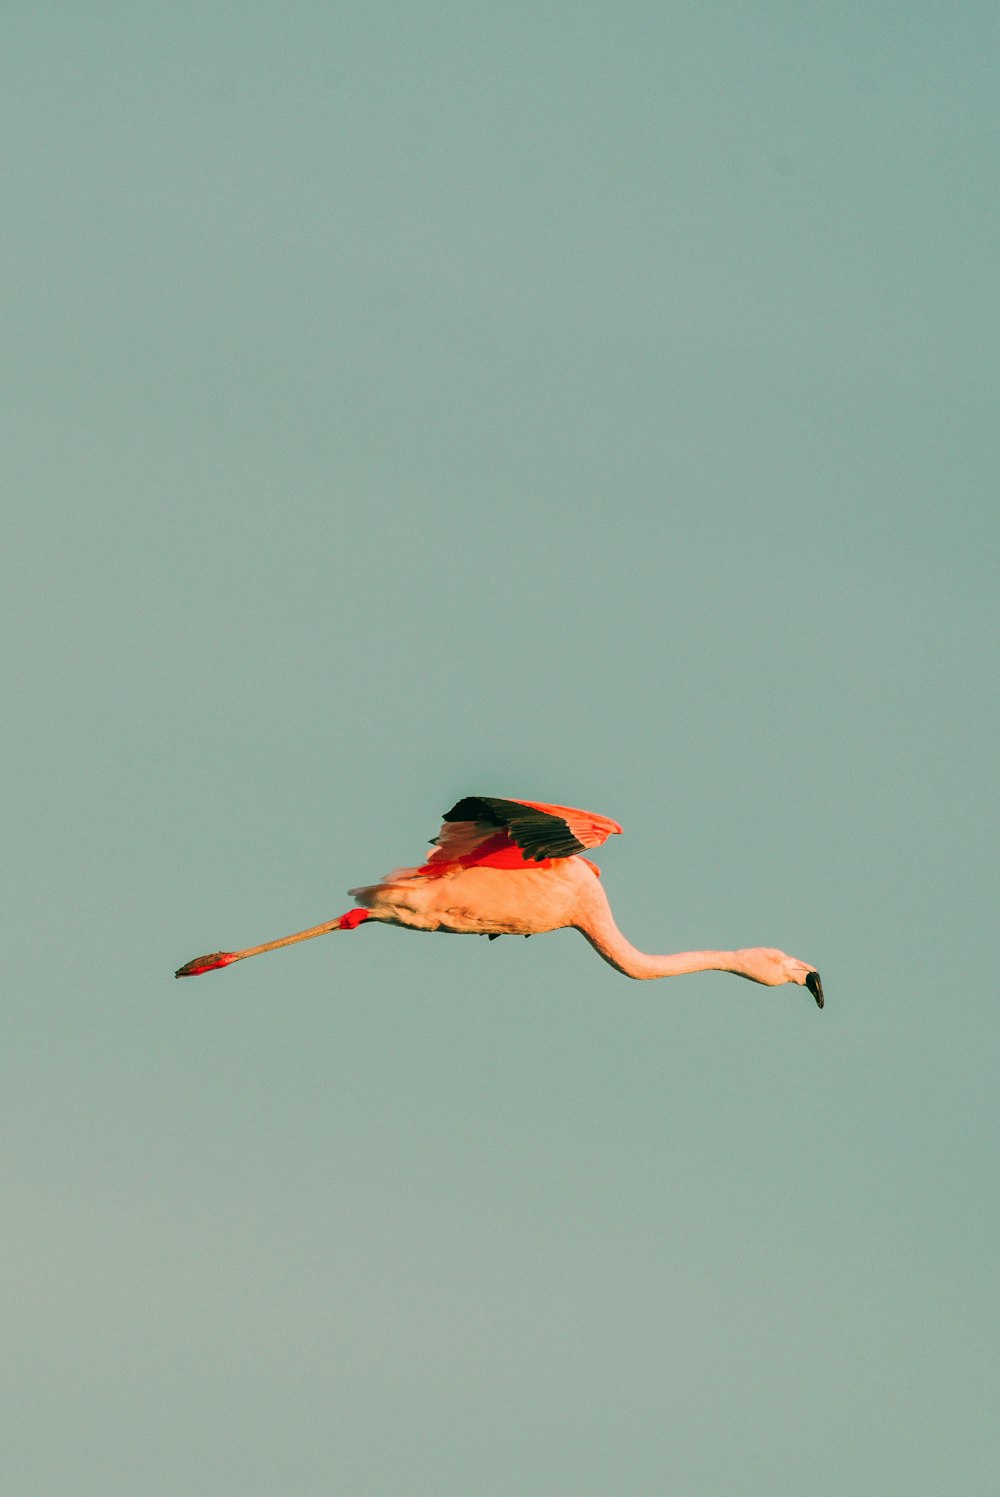 a flamingo flying through a blue sky